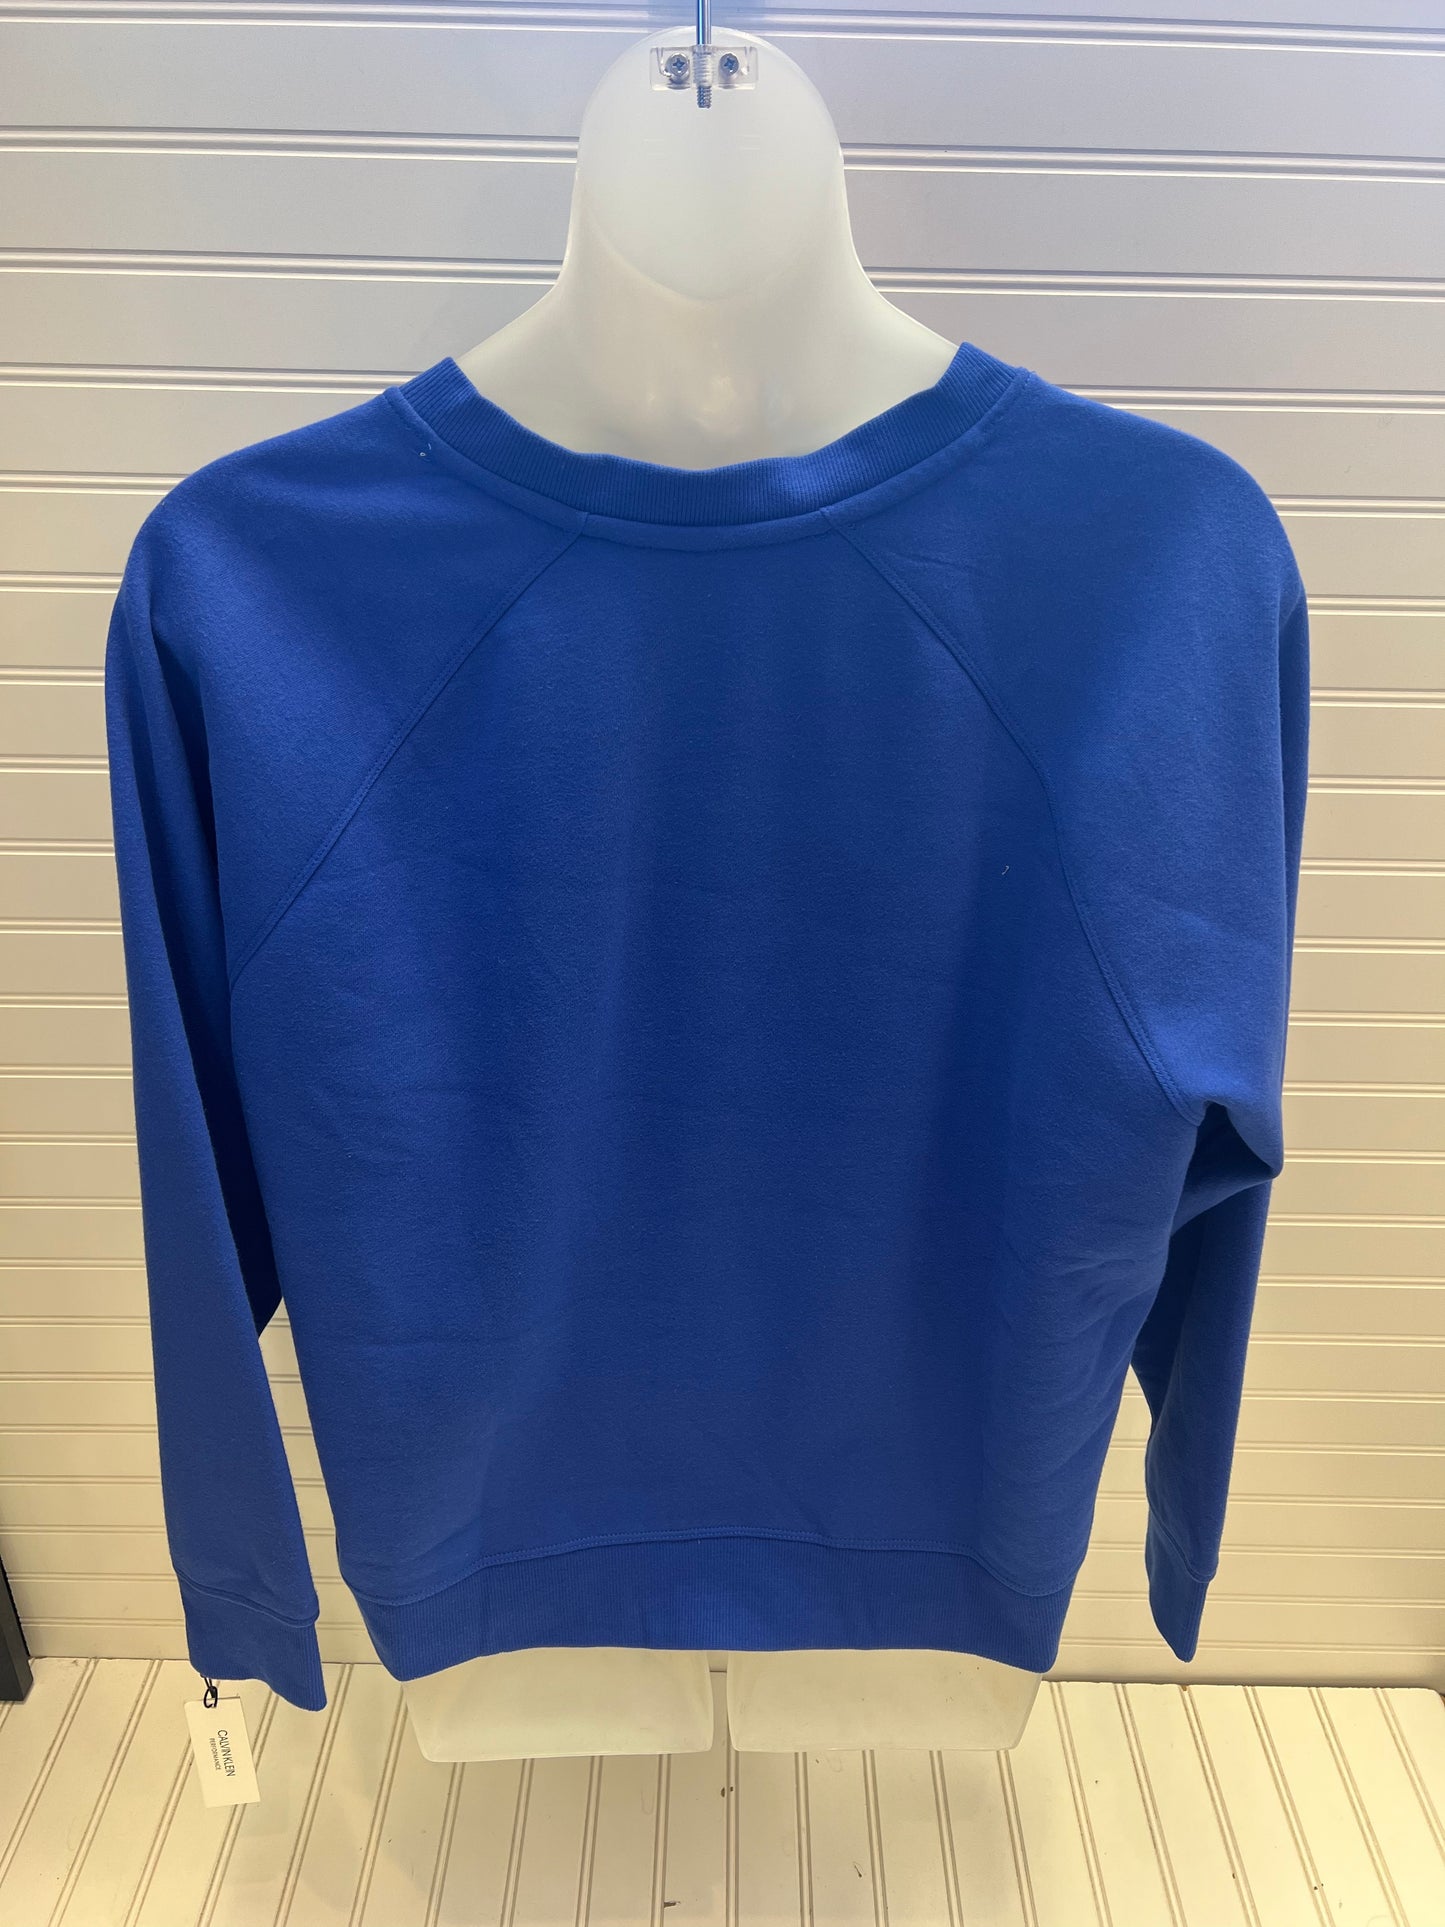 Sweatshirt Crewneck By Calvin Klein  Size: 2x